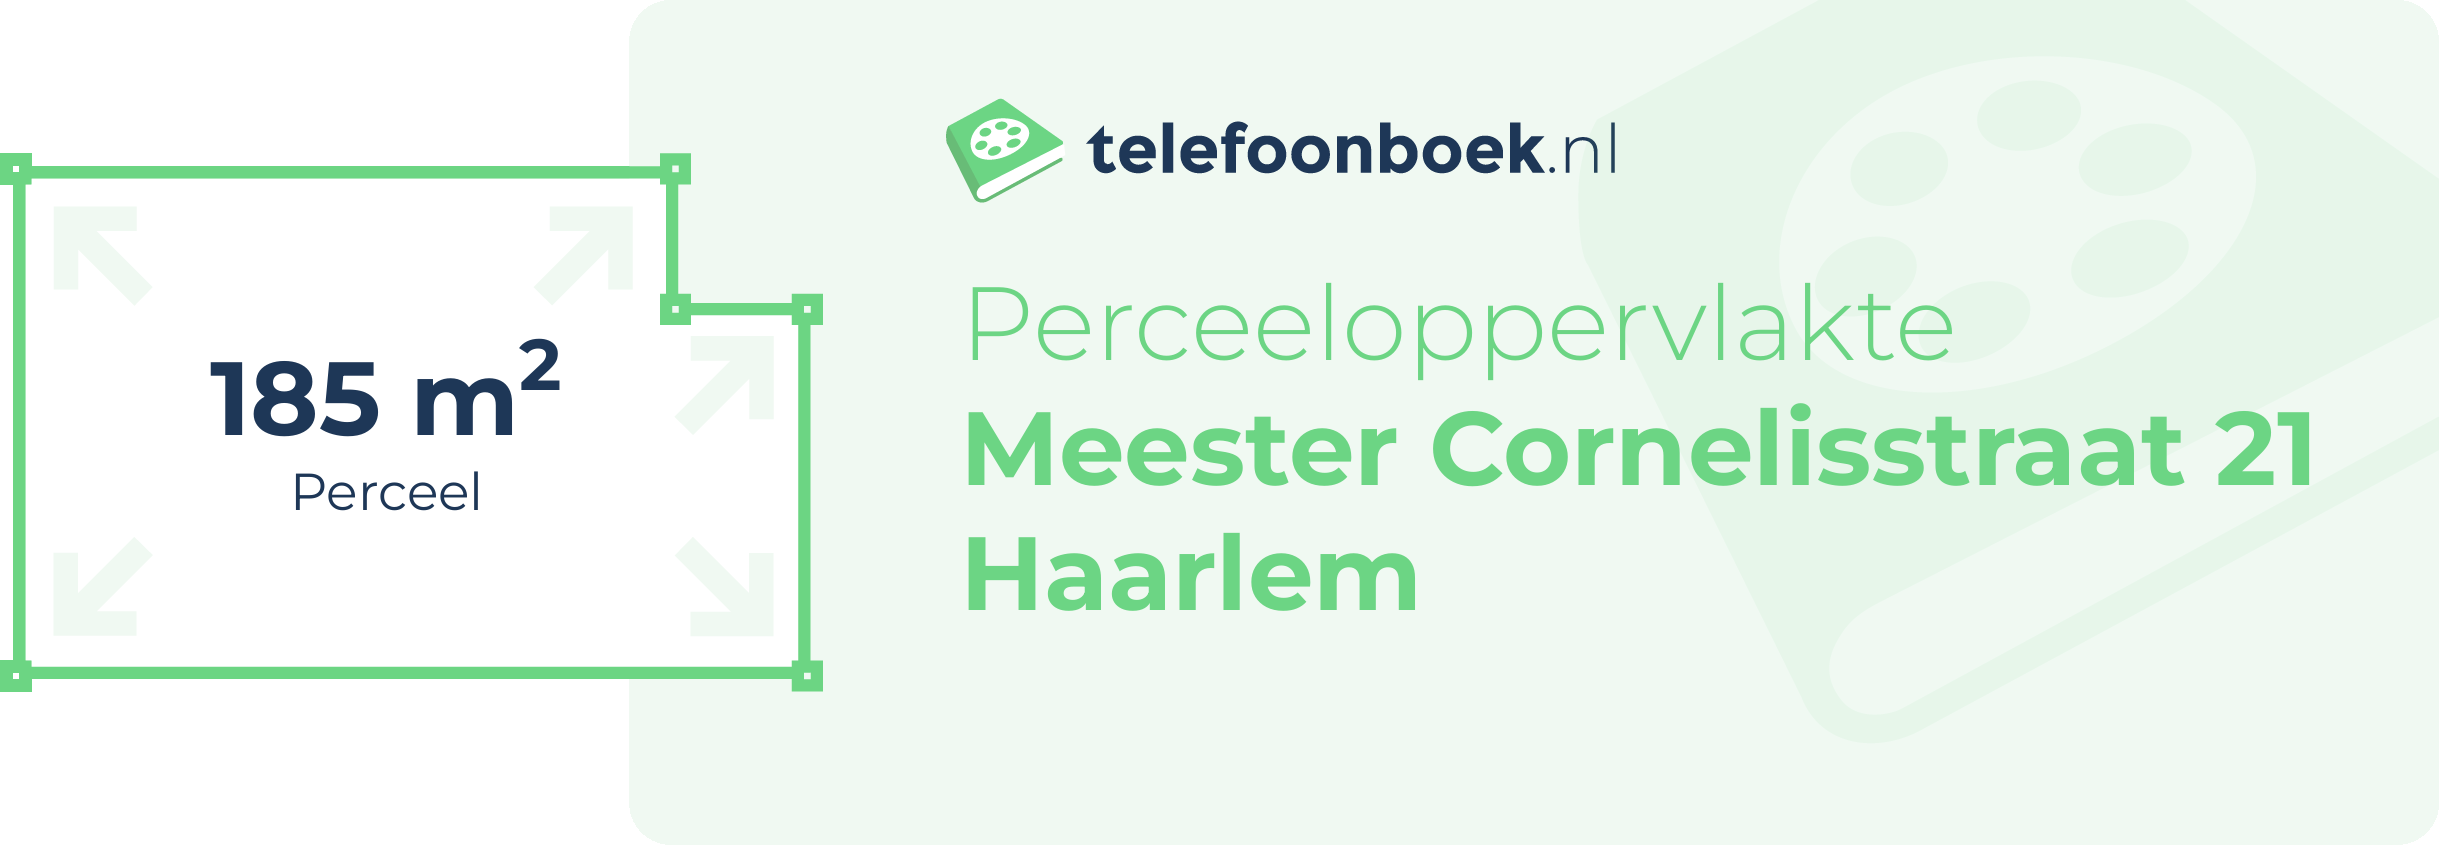 Perceeloppervlakte Meester Cornelisstraat 21 Haarlem